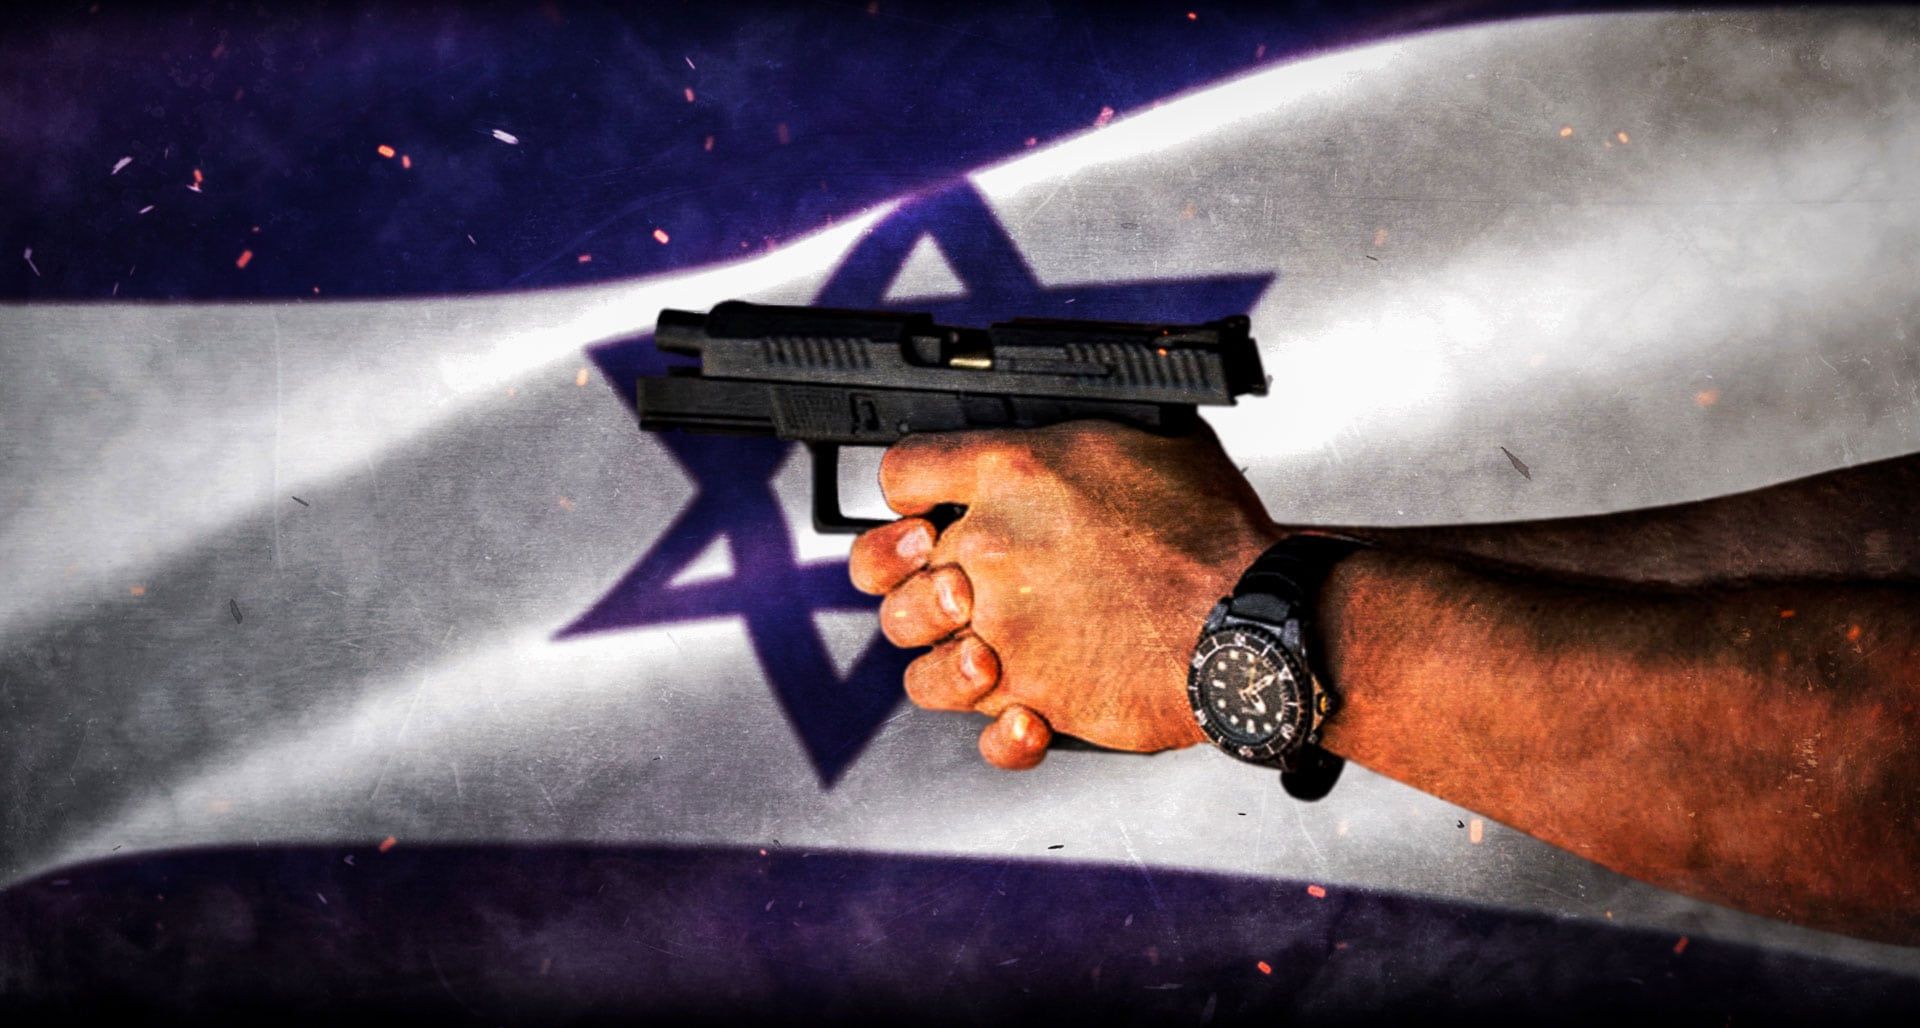 gun laws in Israel